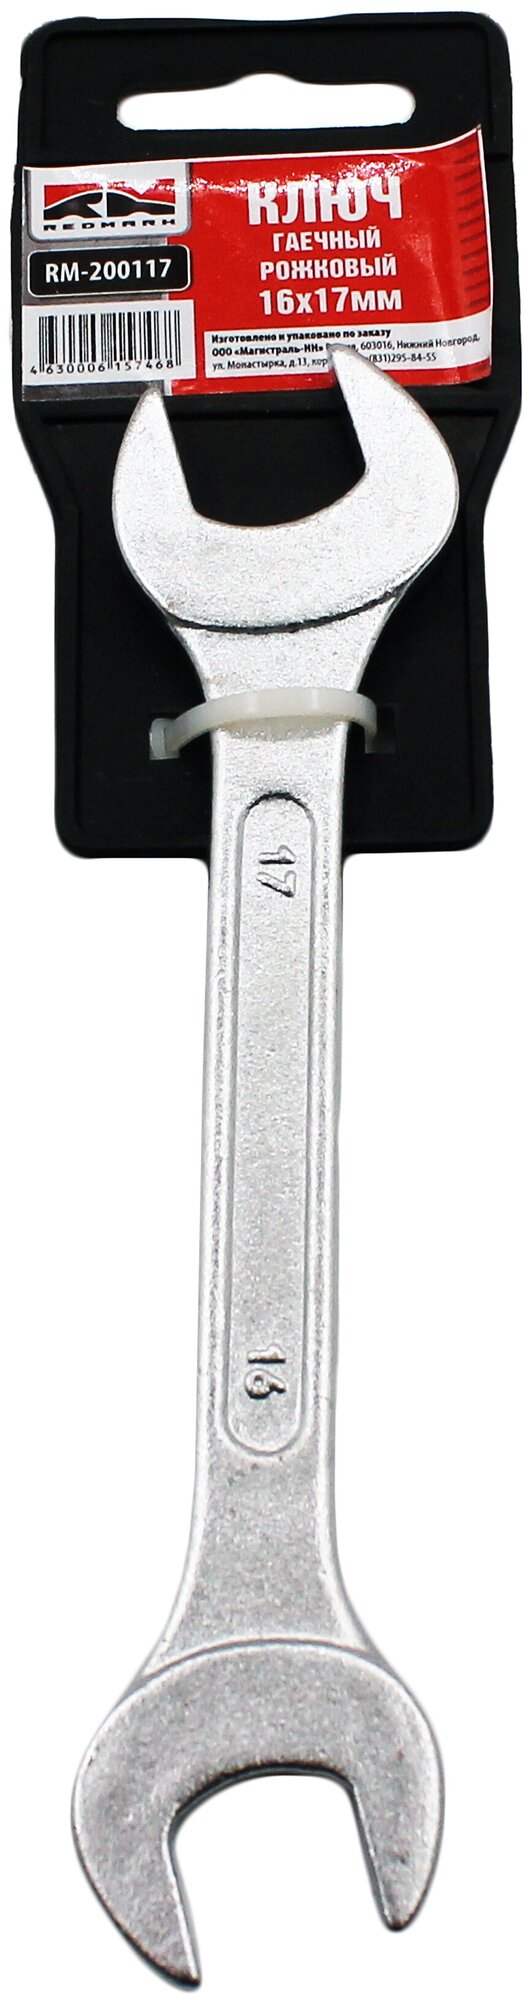 Ключ гаечный рожковый 16х17 мм "RedMark"